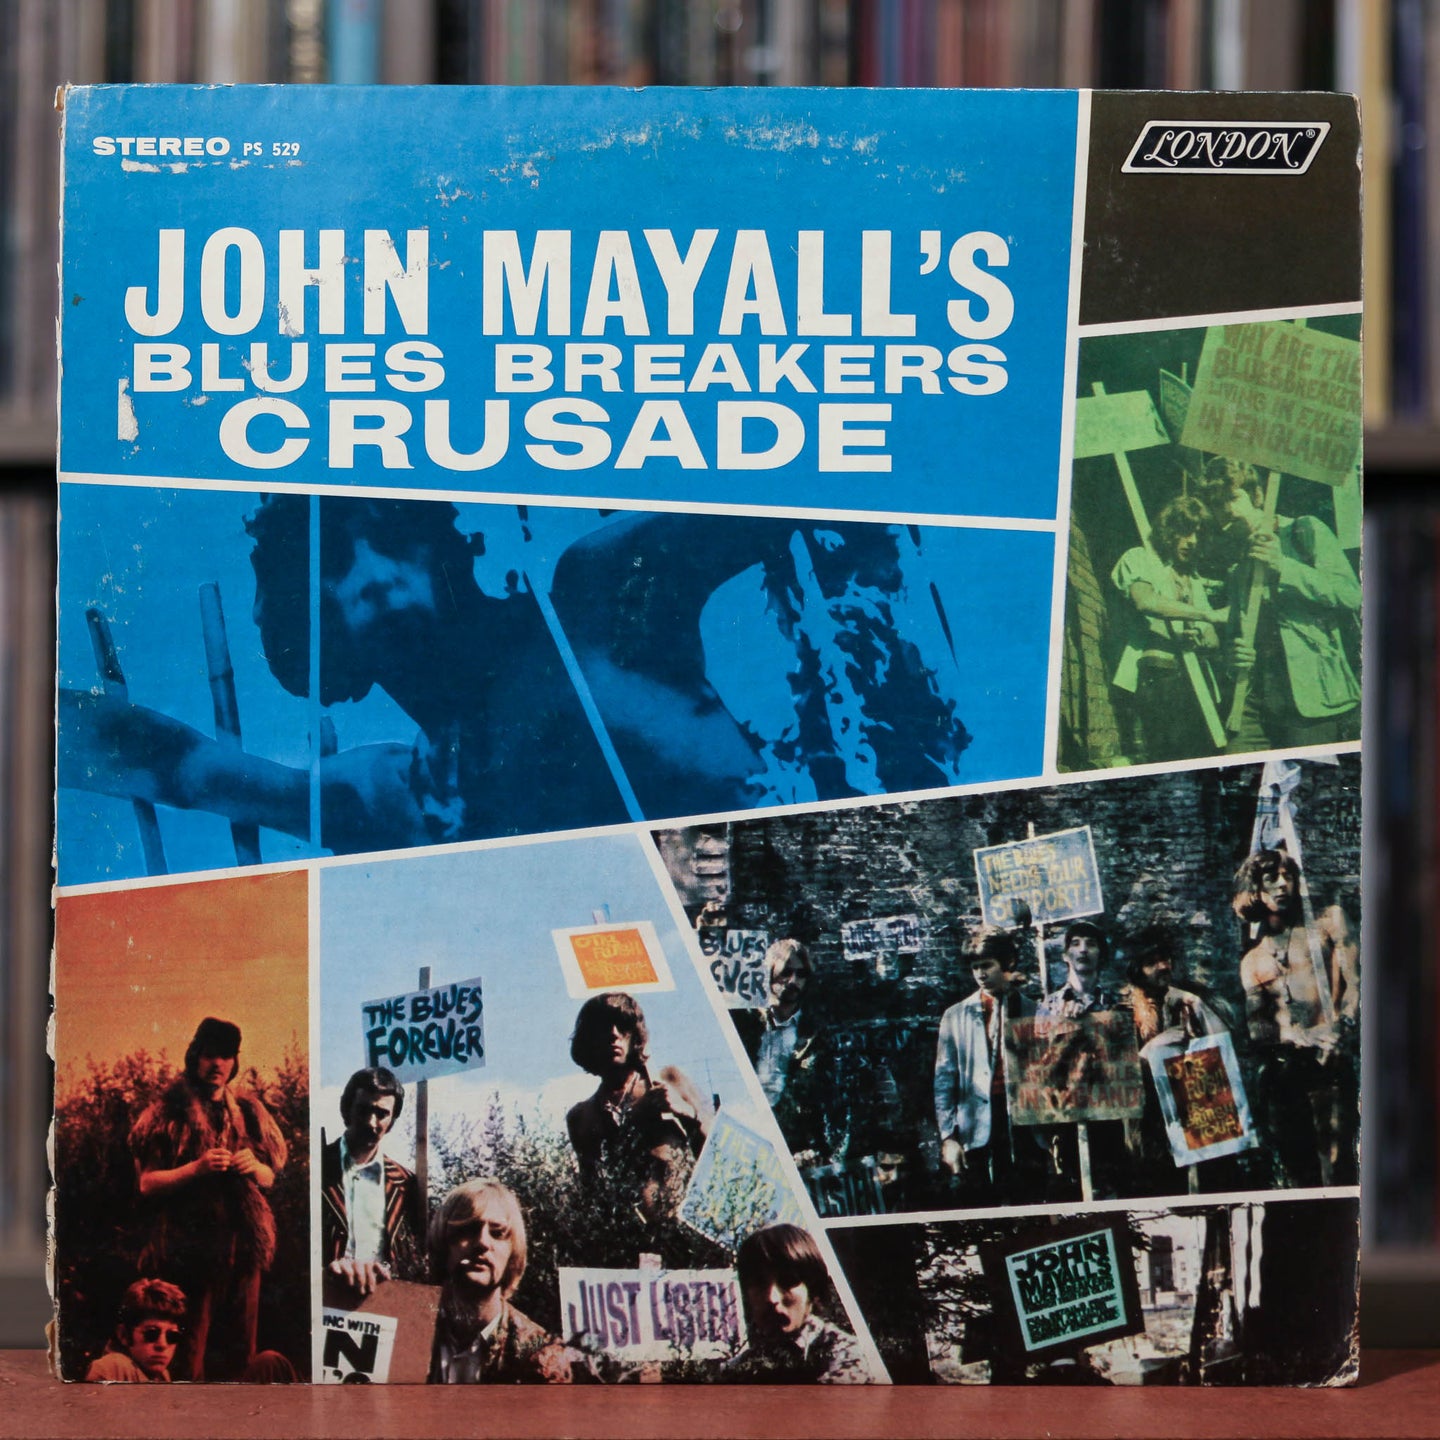 John Mayall's Bluesbreakers - Crusade - 1967 London, VG/VG